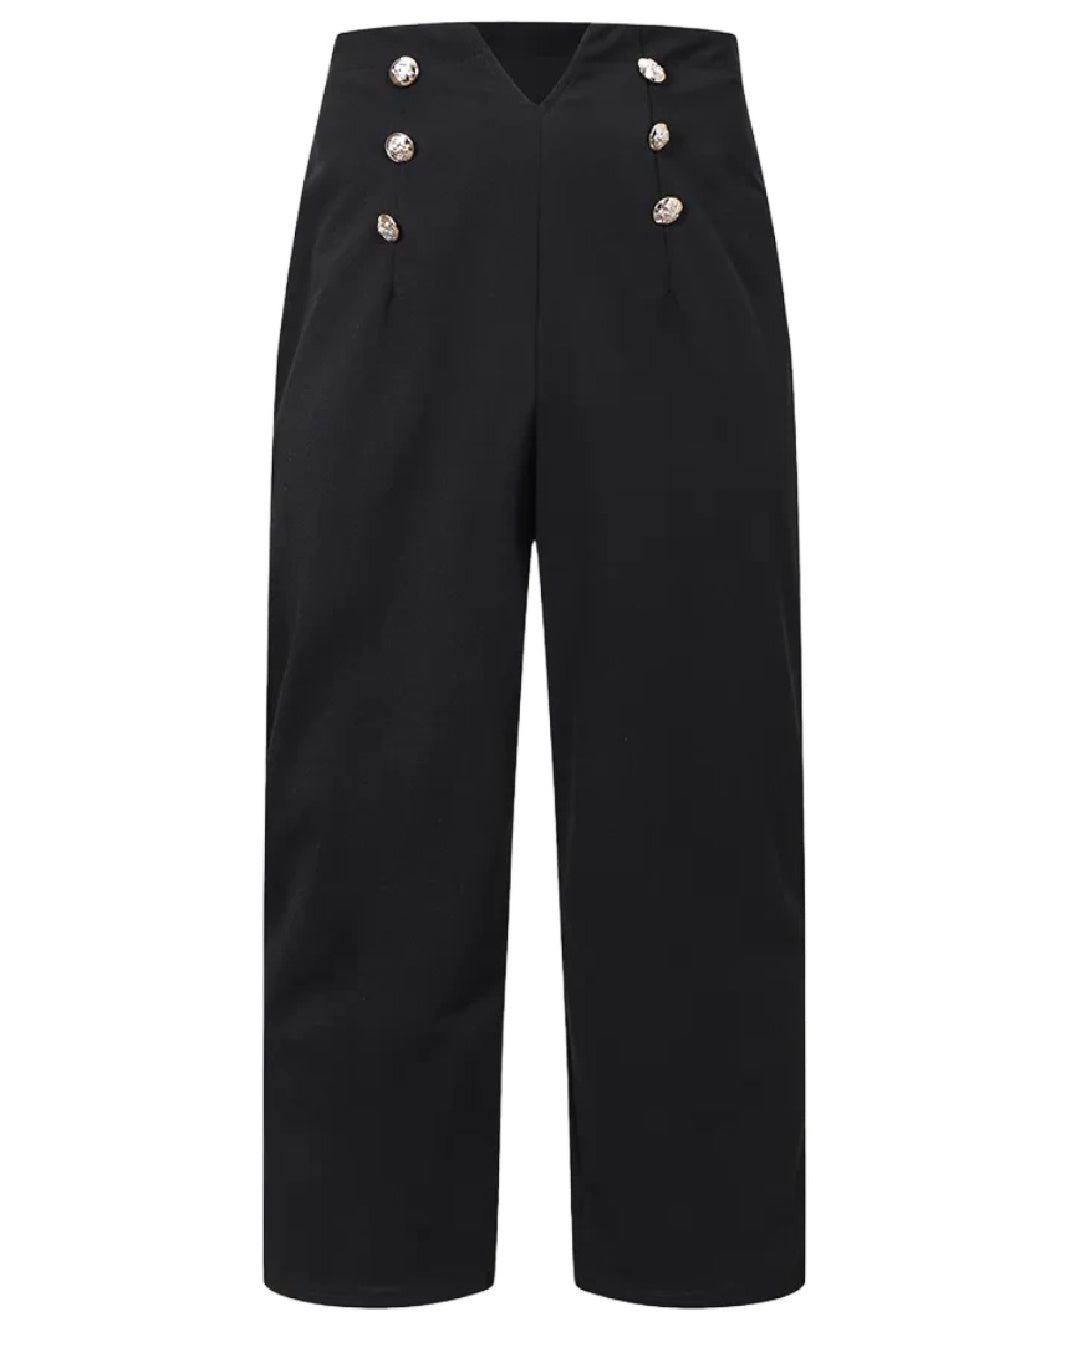 Sailor- the Black High Waist Sailor Pants Plus Size – Dorothea's Closet  Vintage